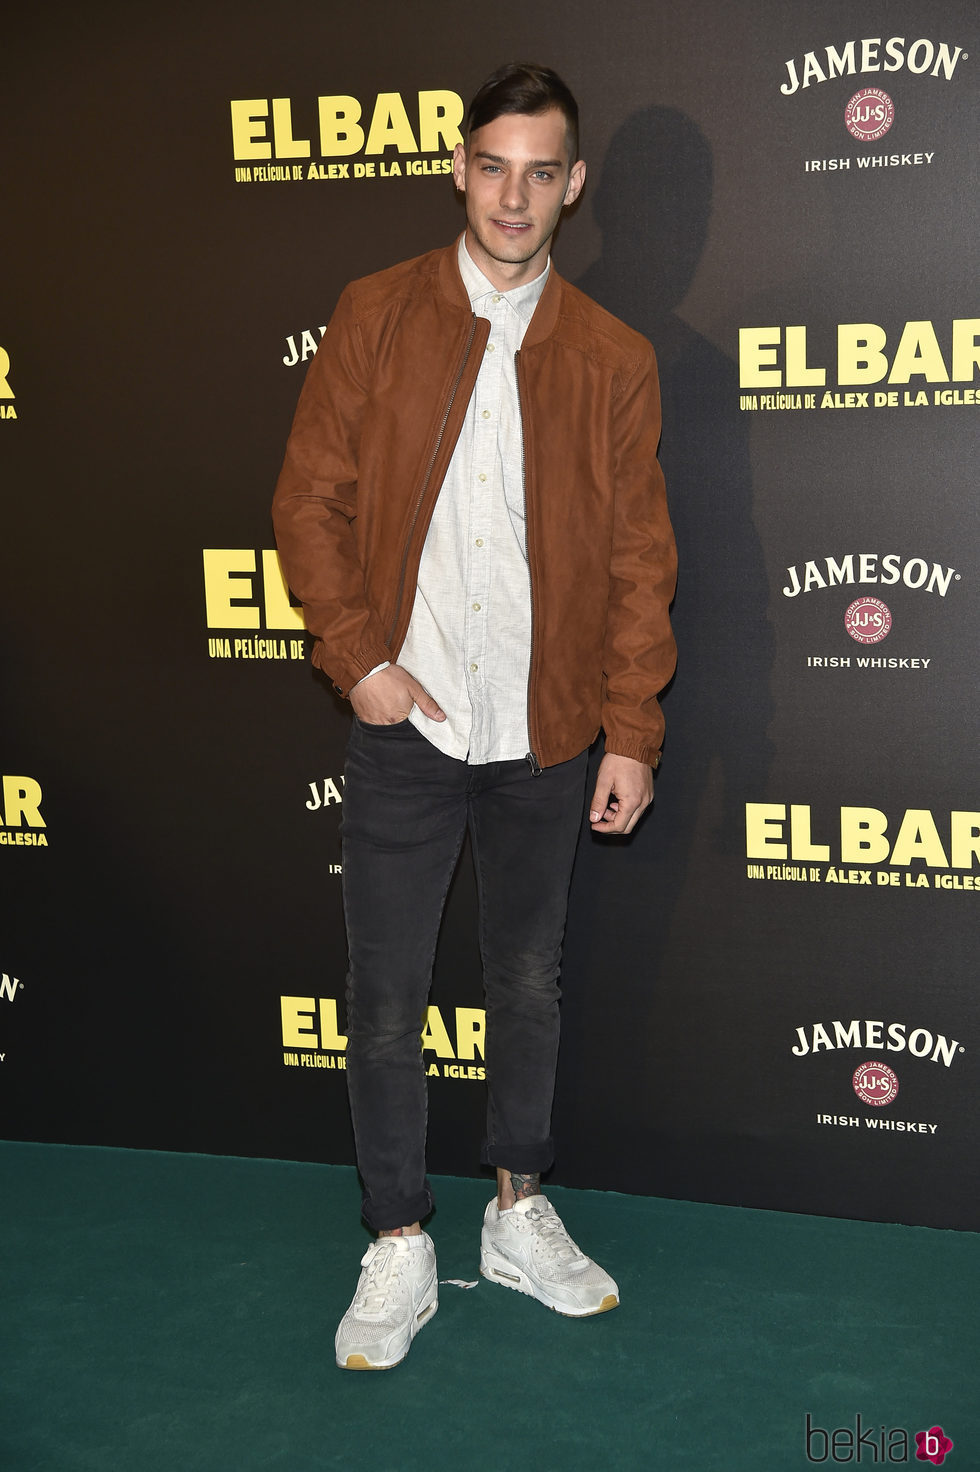 Joel Bosqued en la presentación de la película 'El Bar' en los cines Callao de Madrid